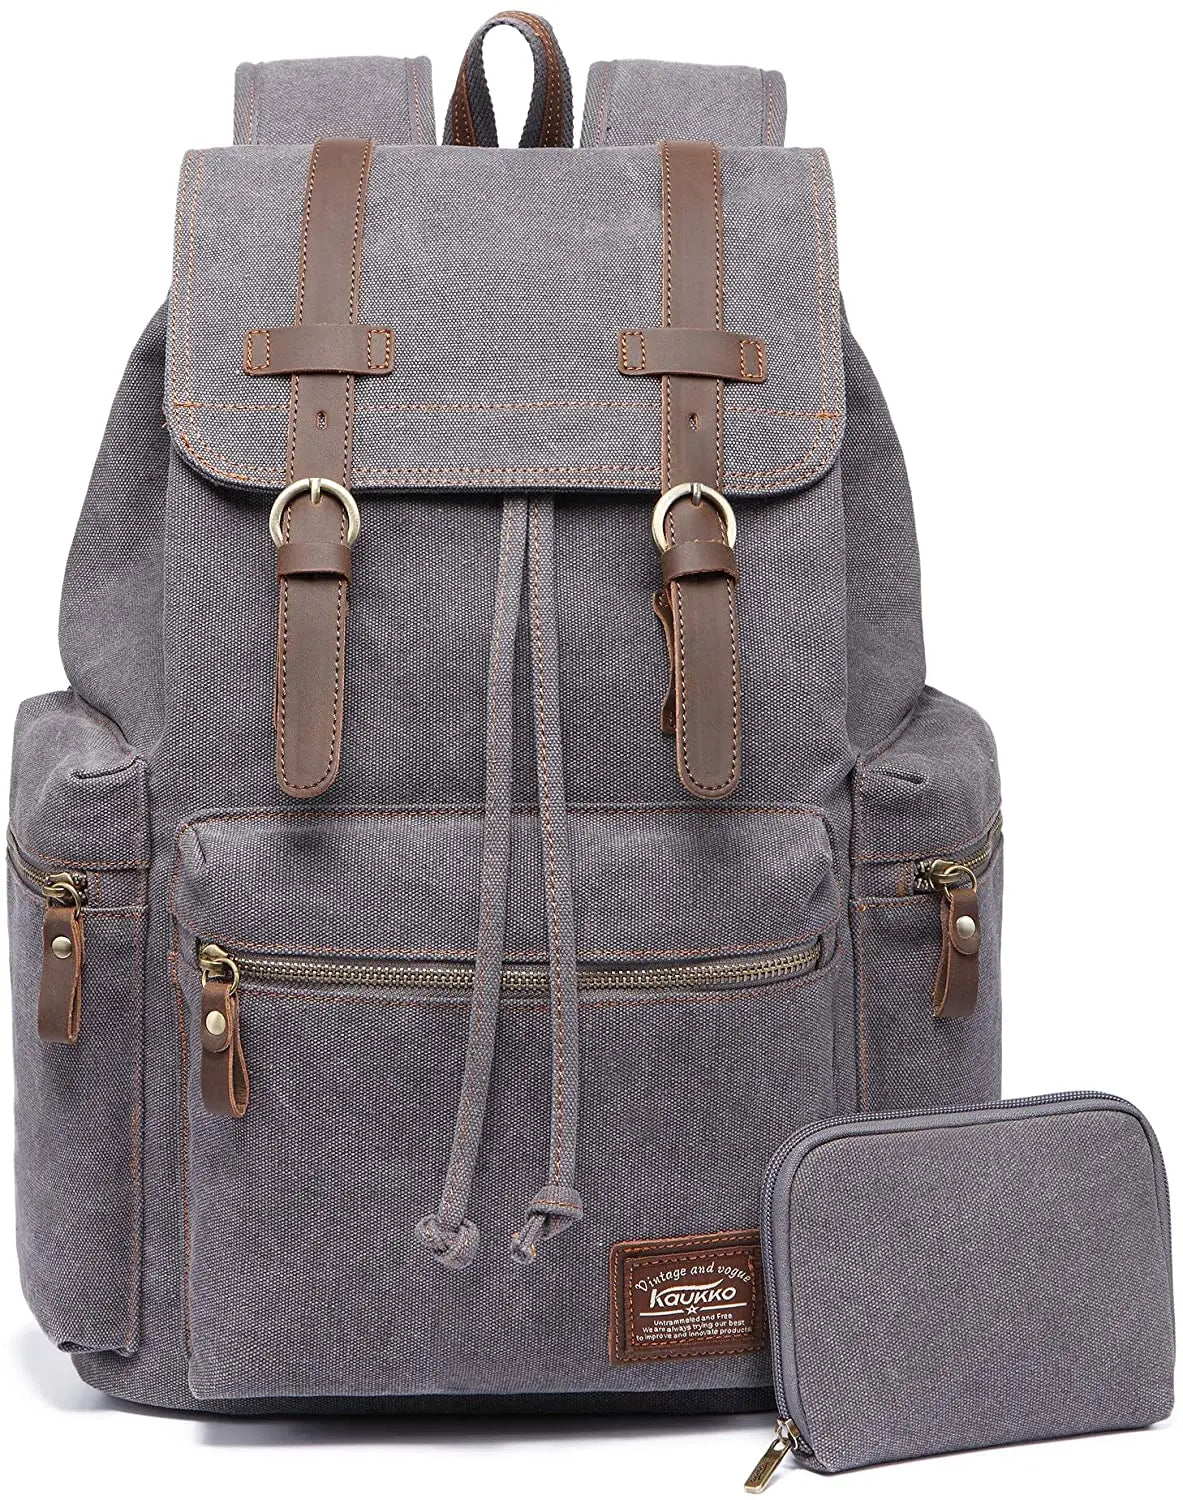 Vintage Canvas Backpack Gray set